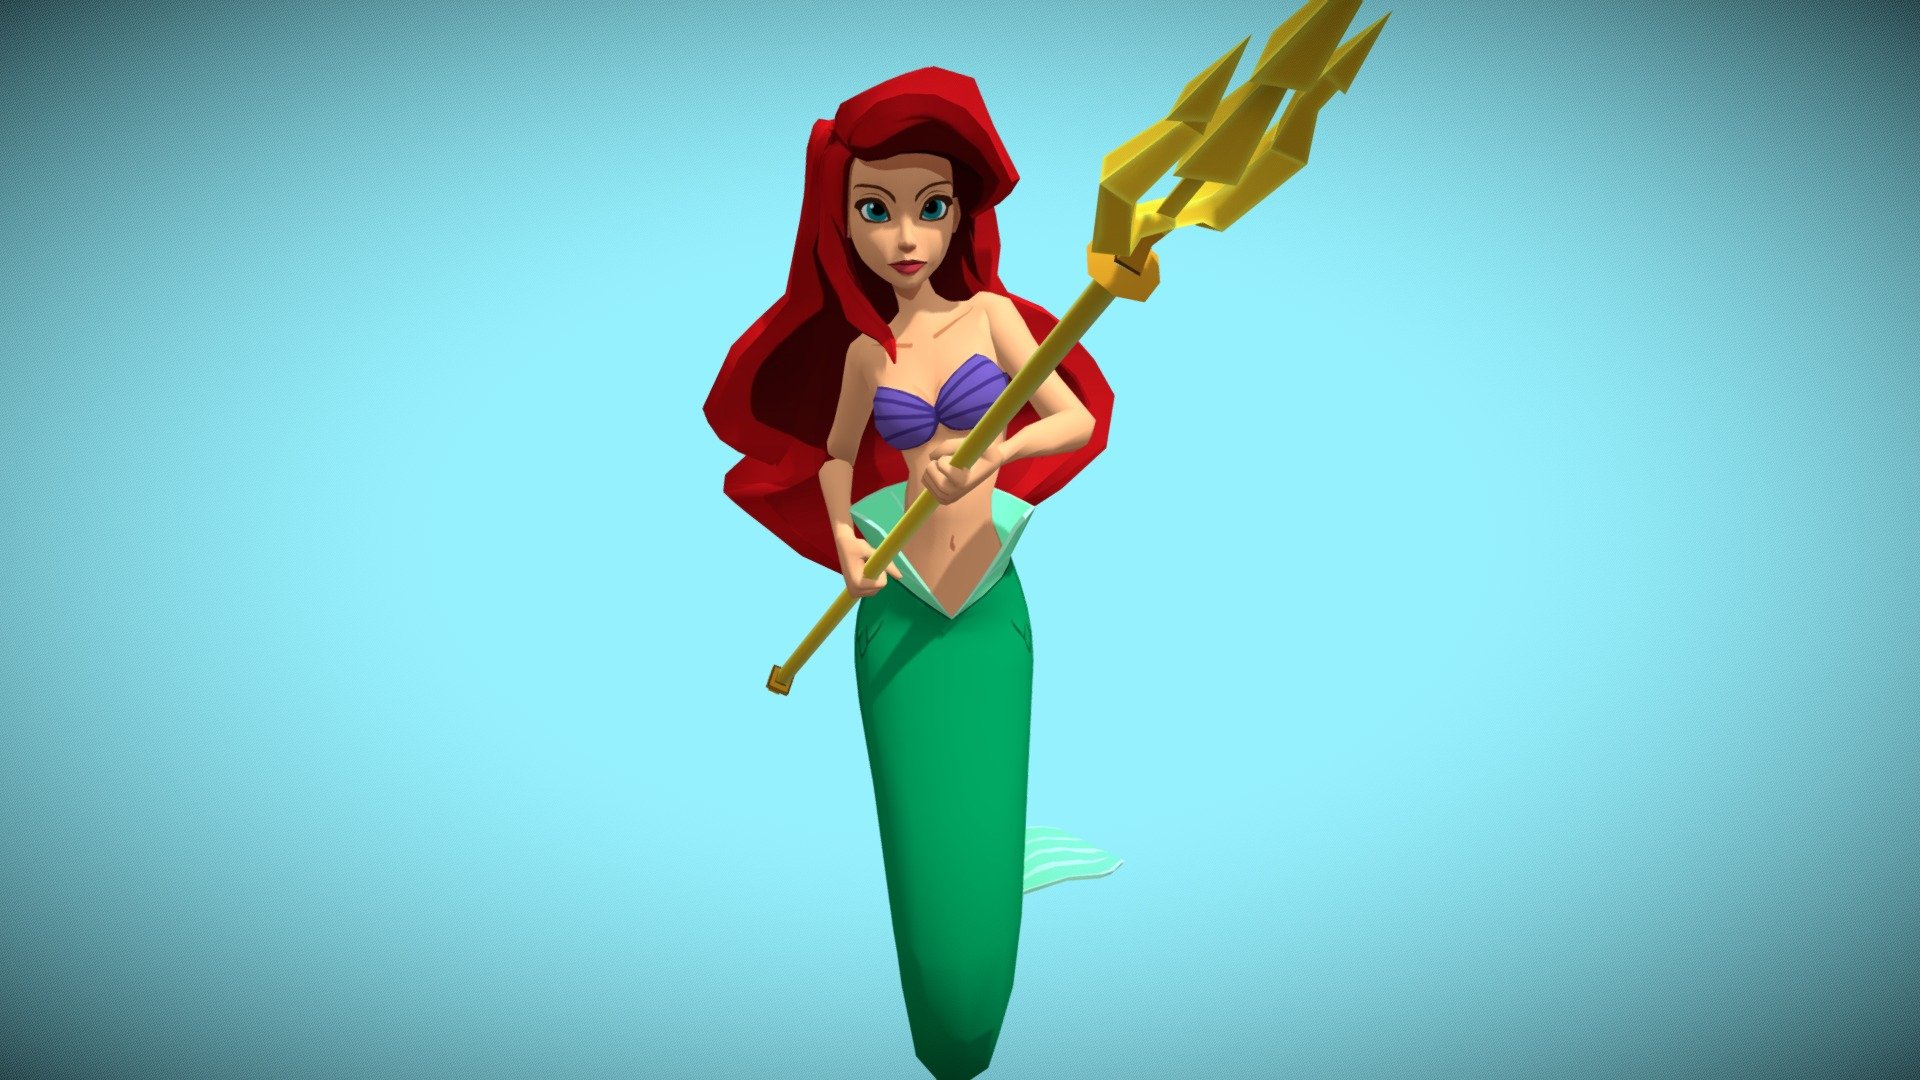 Ariel Combat Idle 01 - Download Free 3D model by James Lashmar (@iamneuron) 3d model